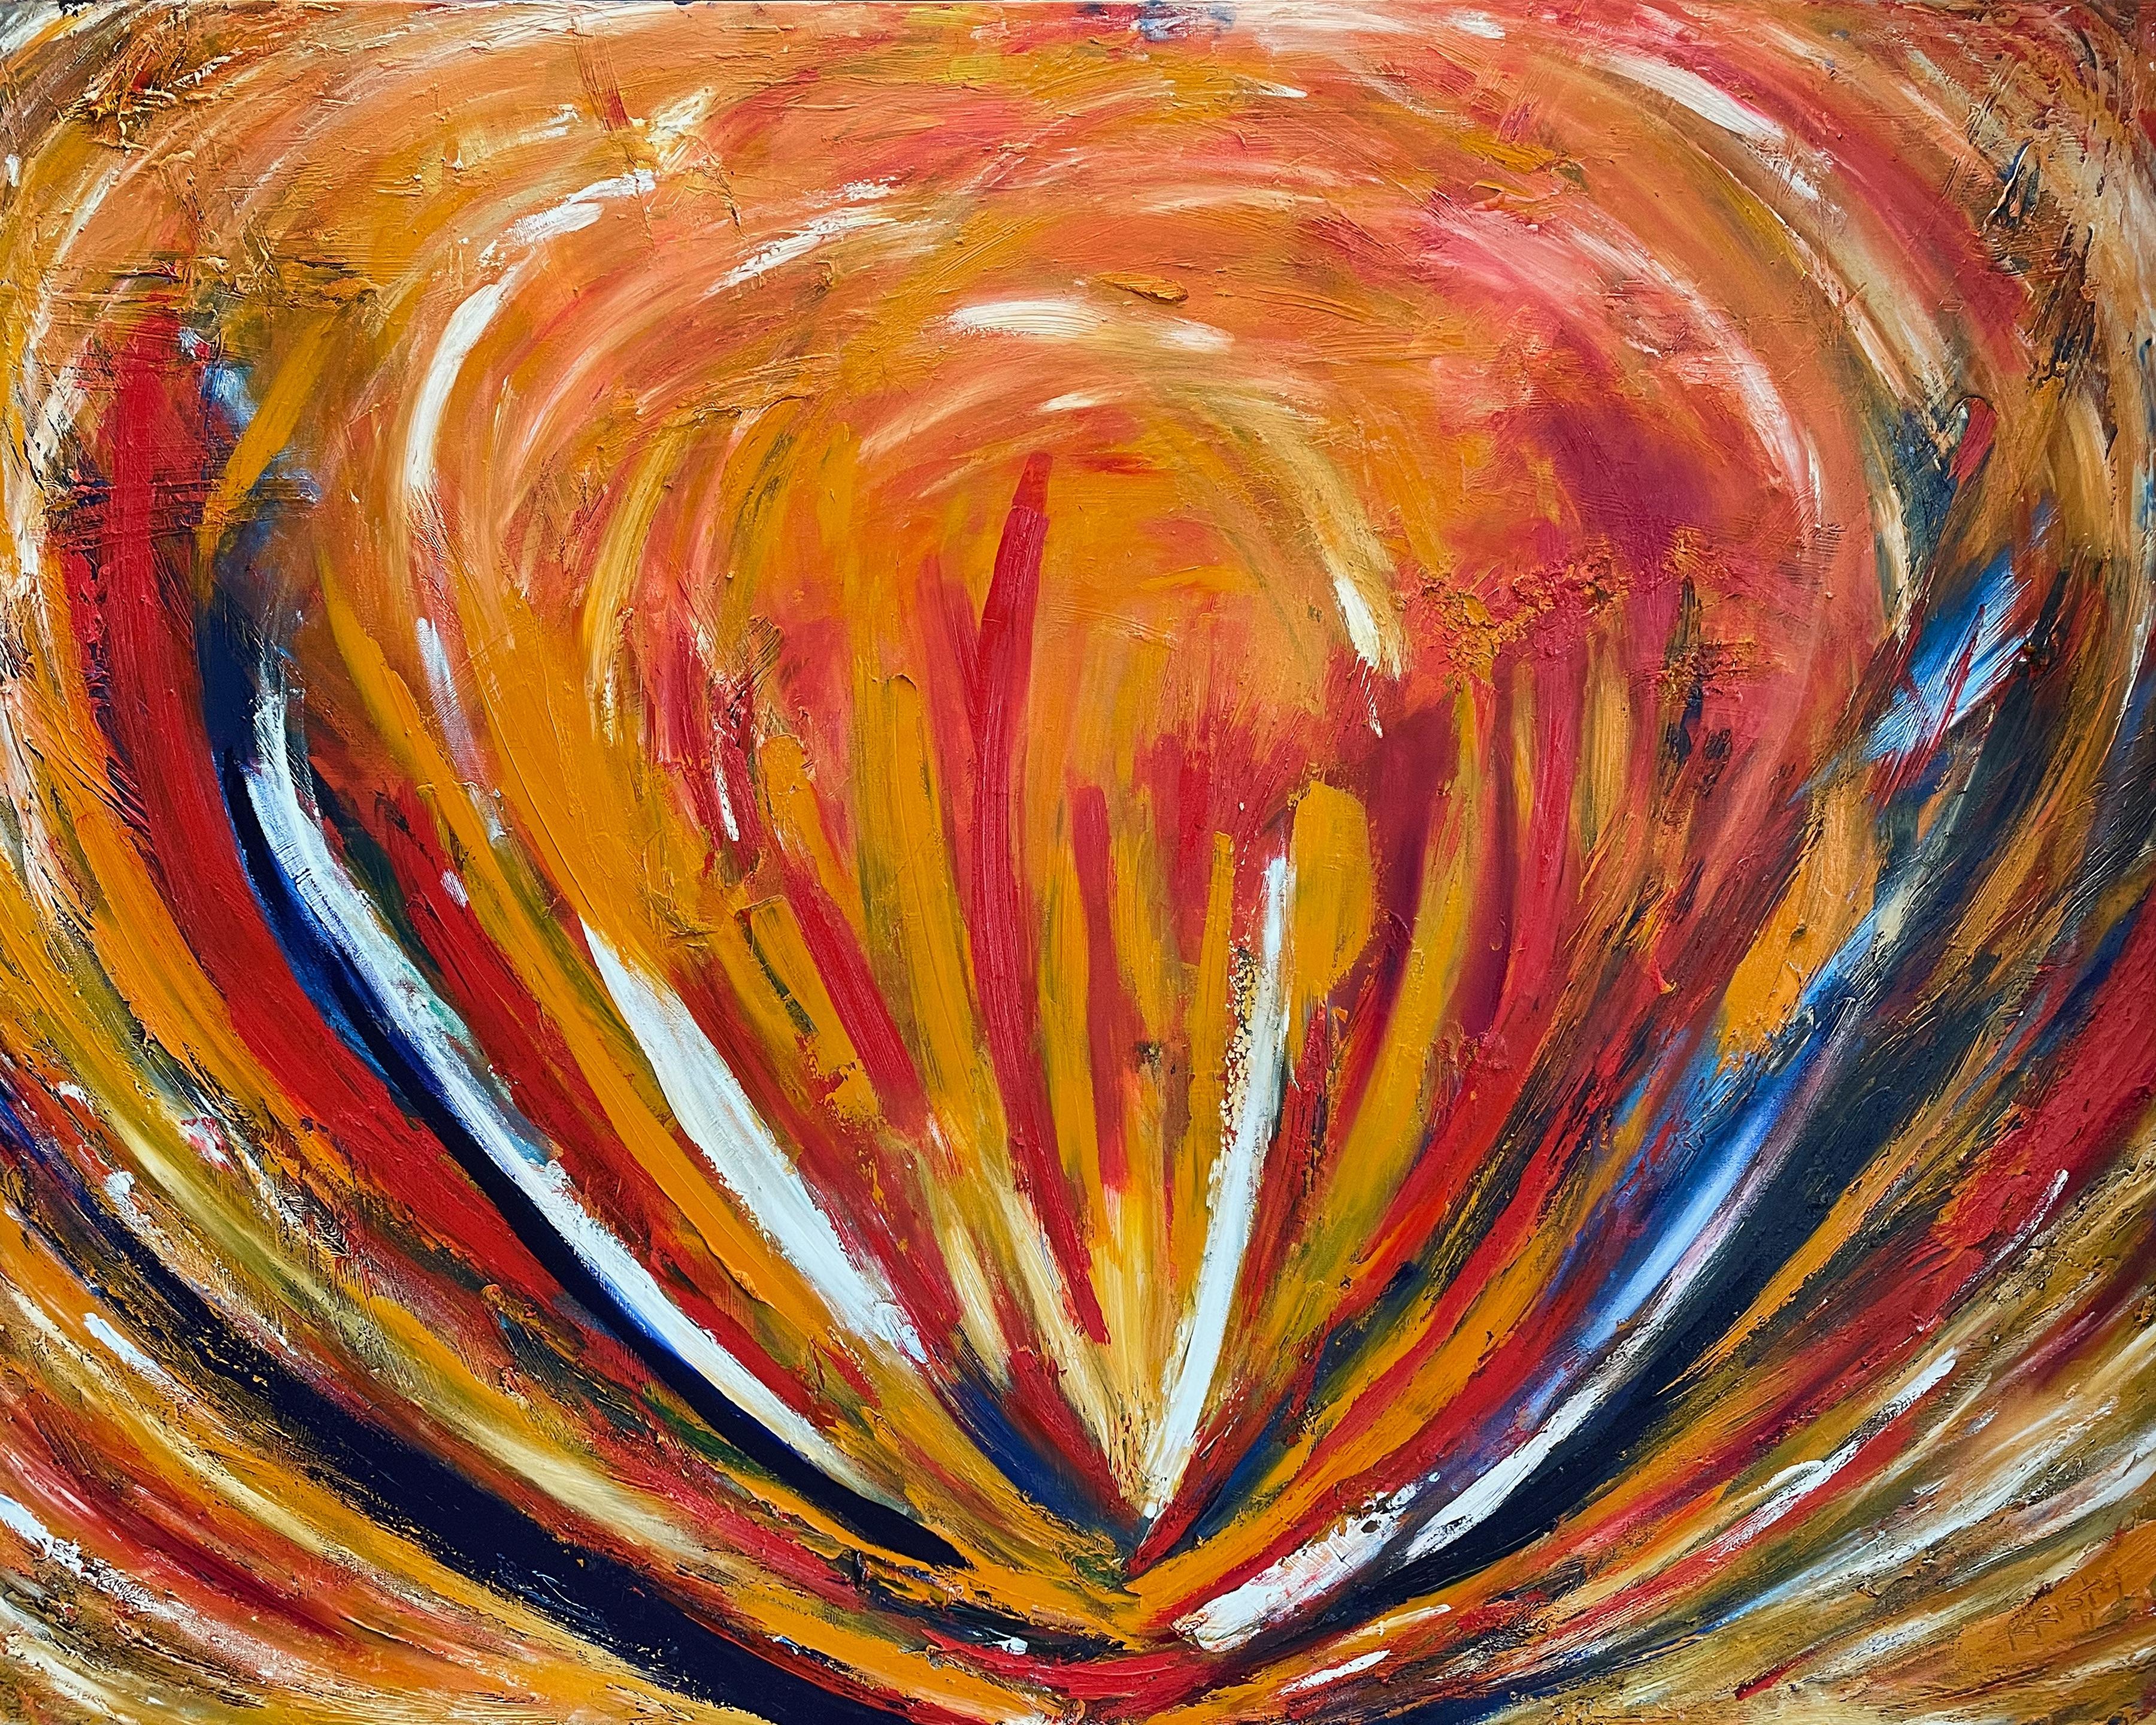 "Lotus" ist ein beeindruckendes Ölgemälde von Kristy Chettle im Format 48" x 60". Es strotzt nur so vor kräftigen Farben und Bewegung, getreu dem abstrakten expressionistischen Stil, den es repräsentiert. Warme Rot-, Orange- und Gelbtöne wirbeln um